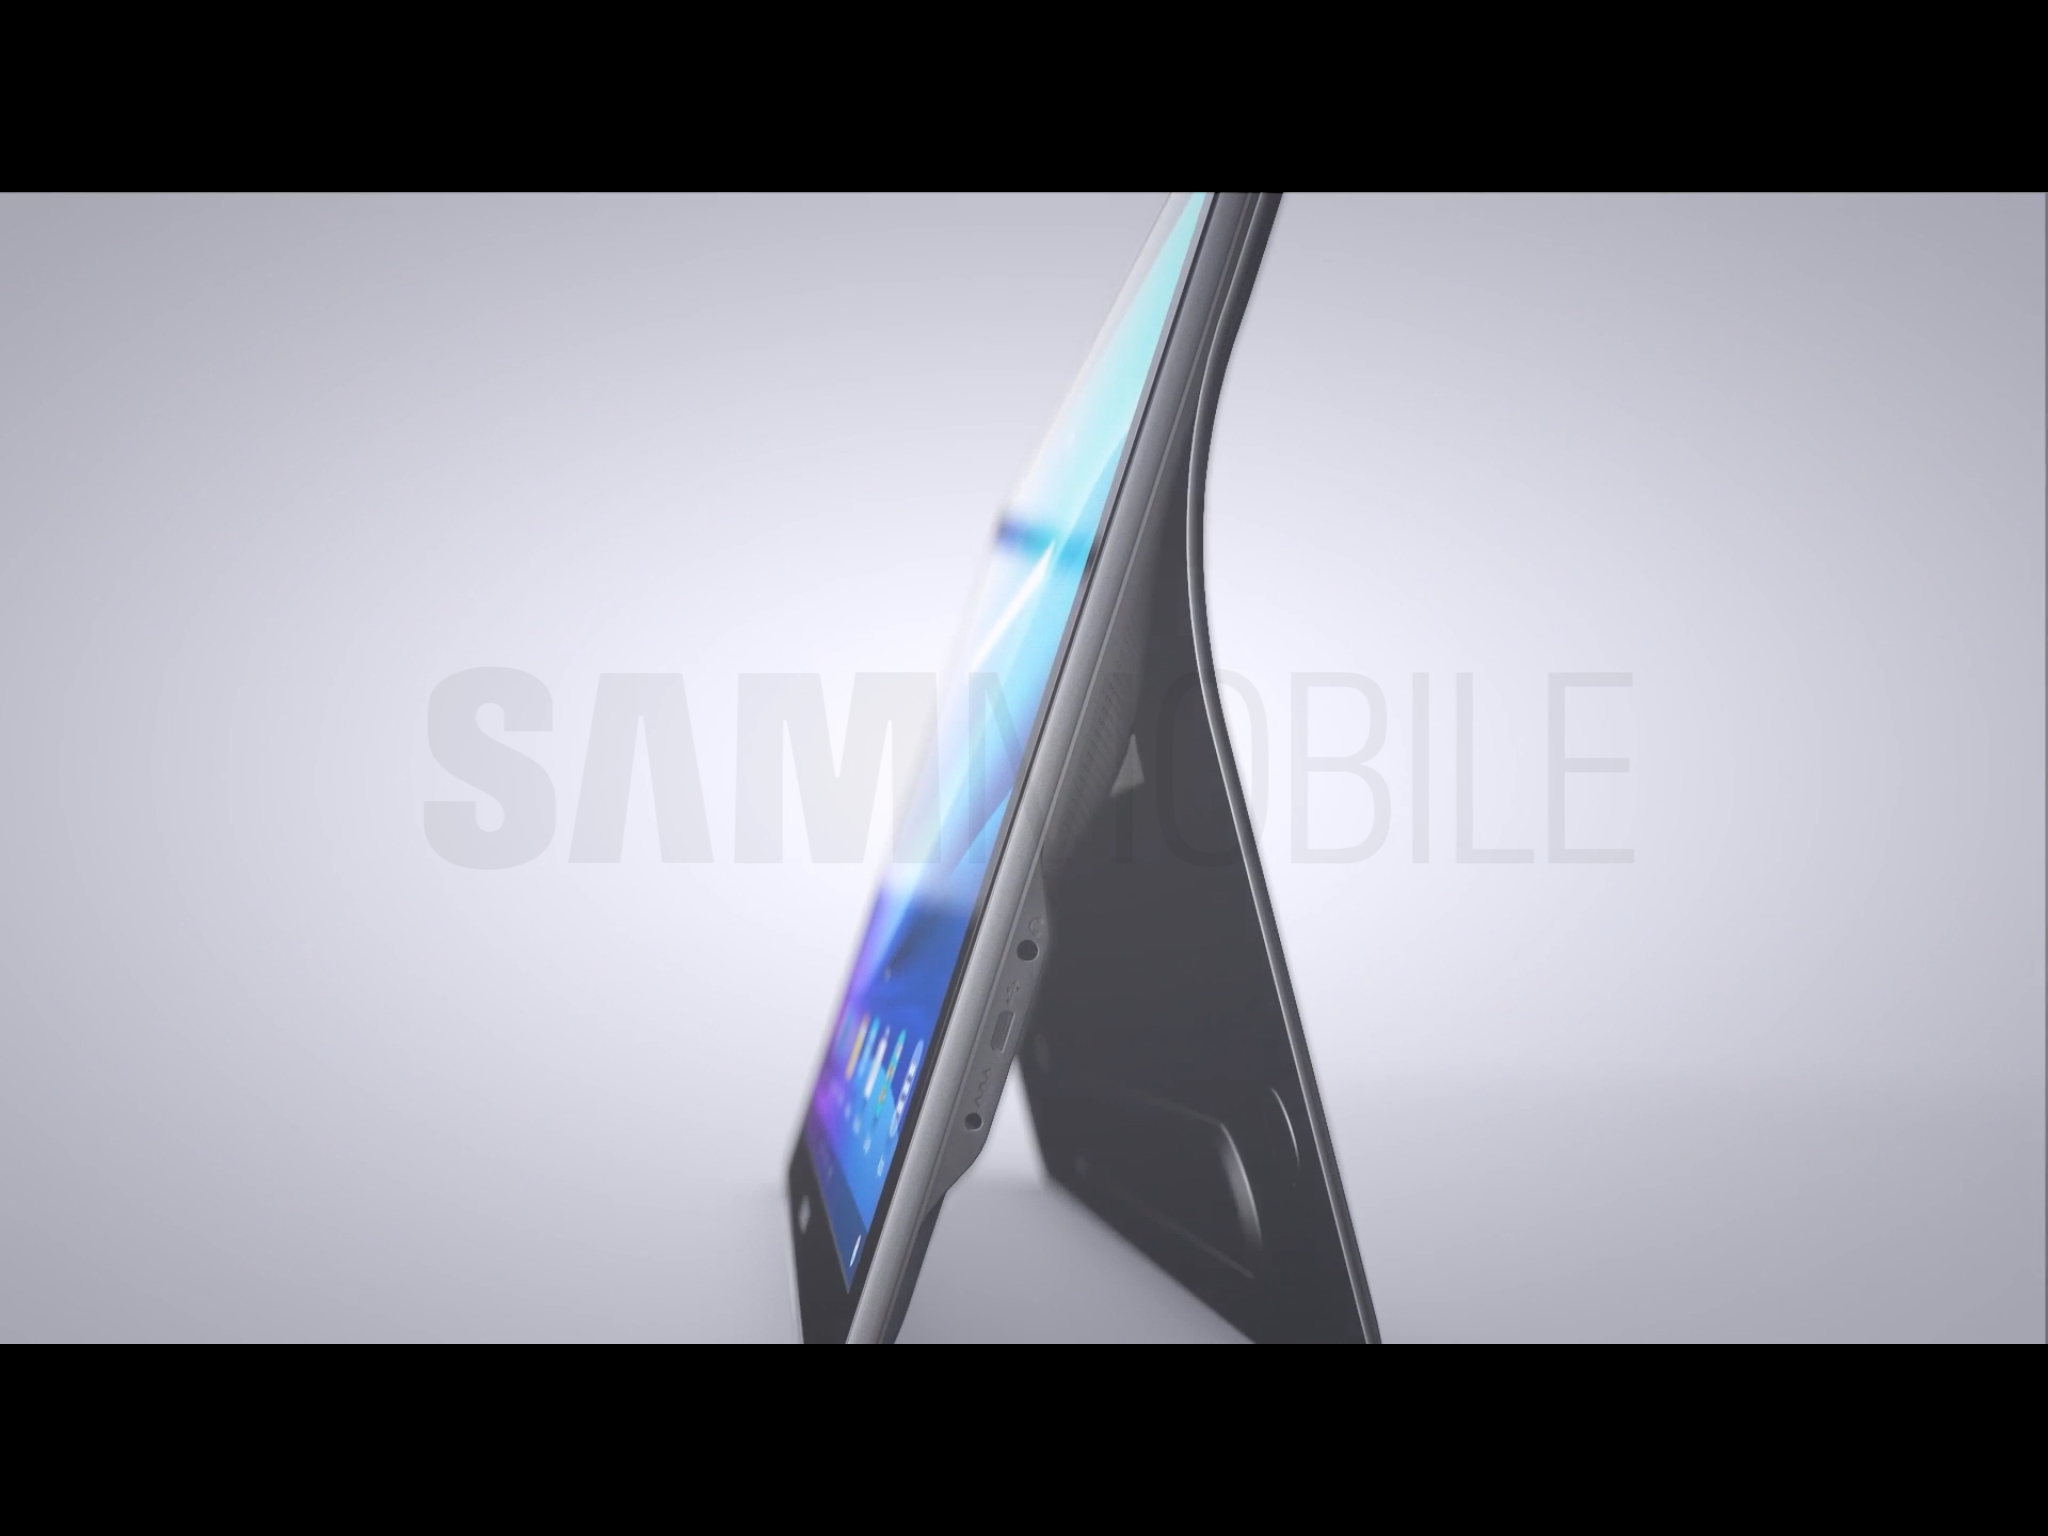 Samsung annonce la Galaxy View, une immense tablette de 18,4 pouces